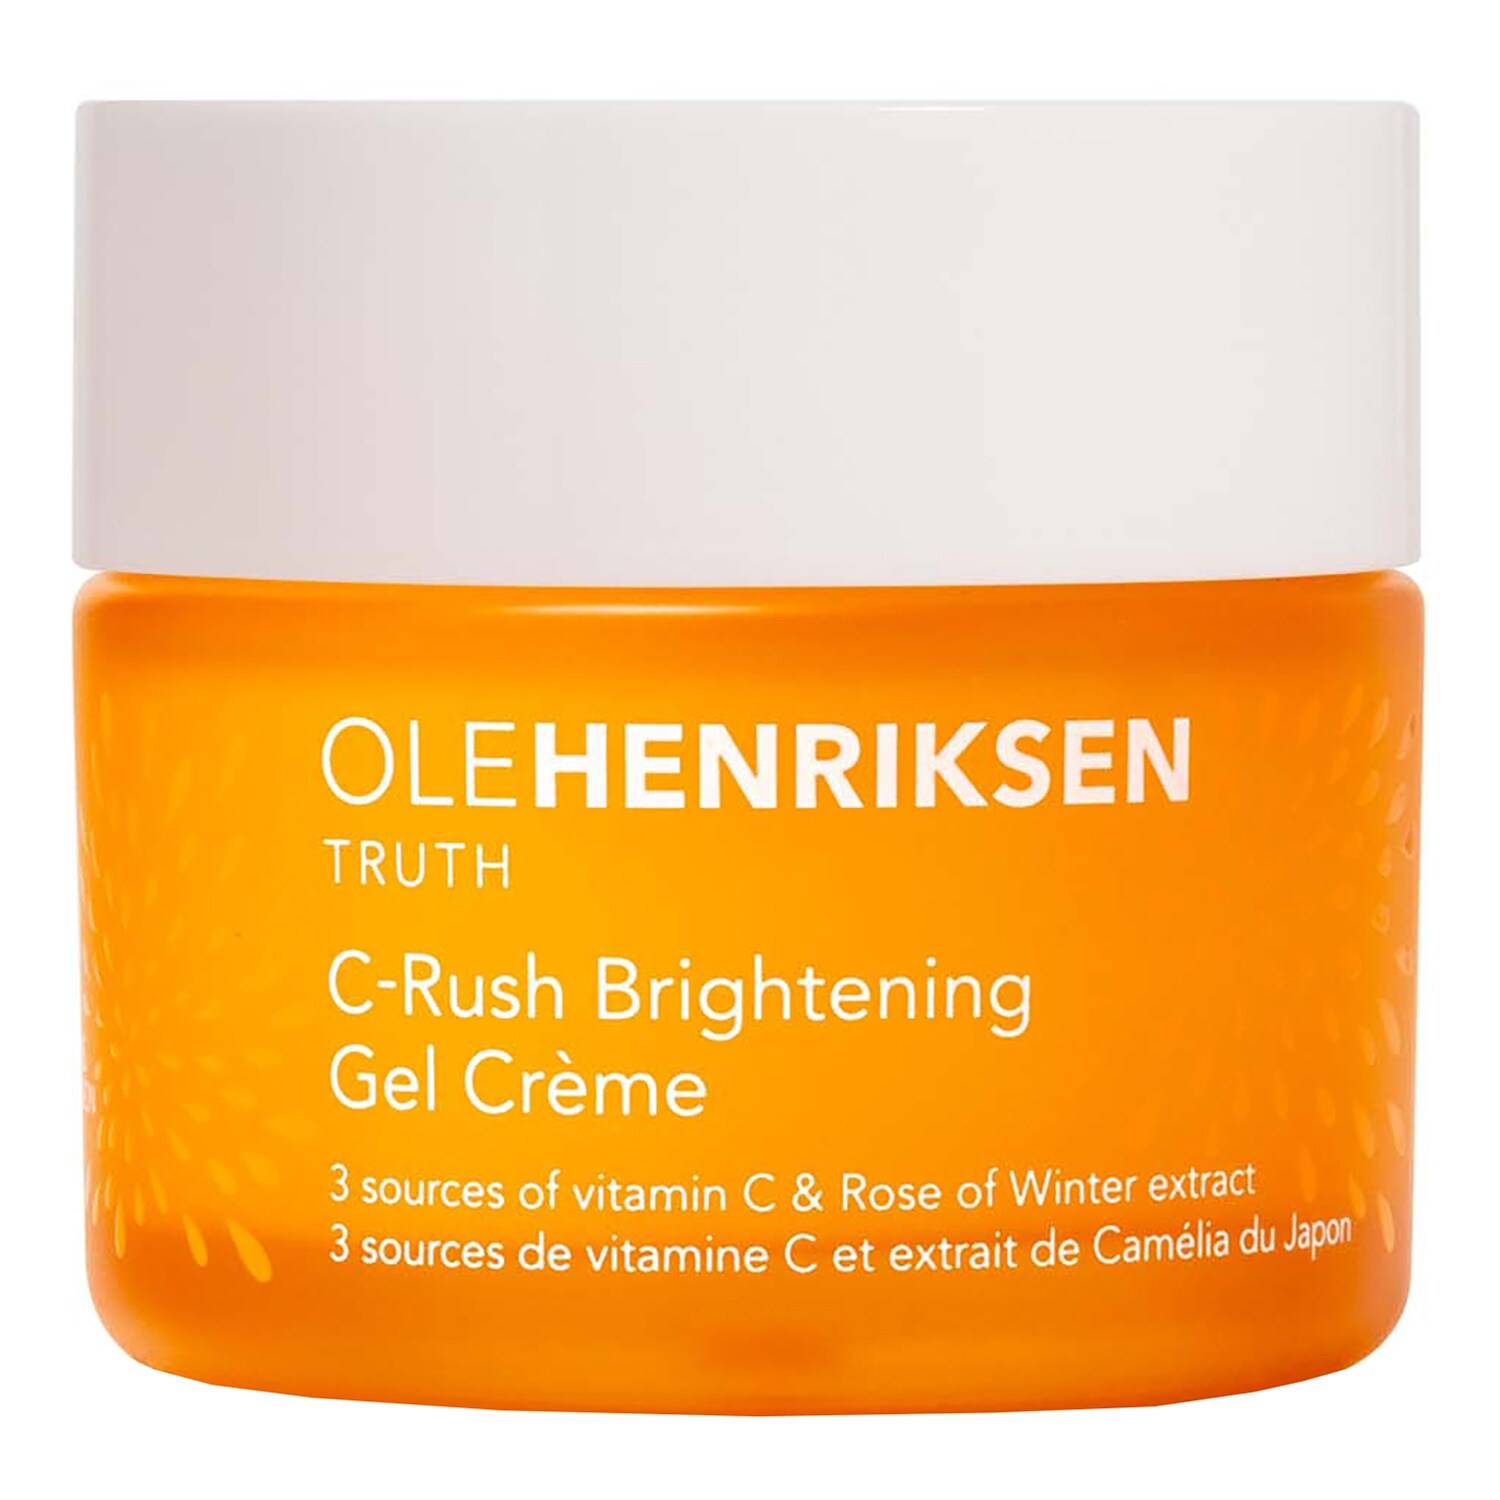 Ole Henriksen C-Rush Brightening Gel Creme 50Ml